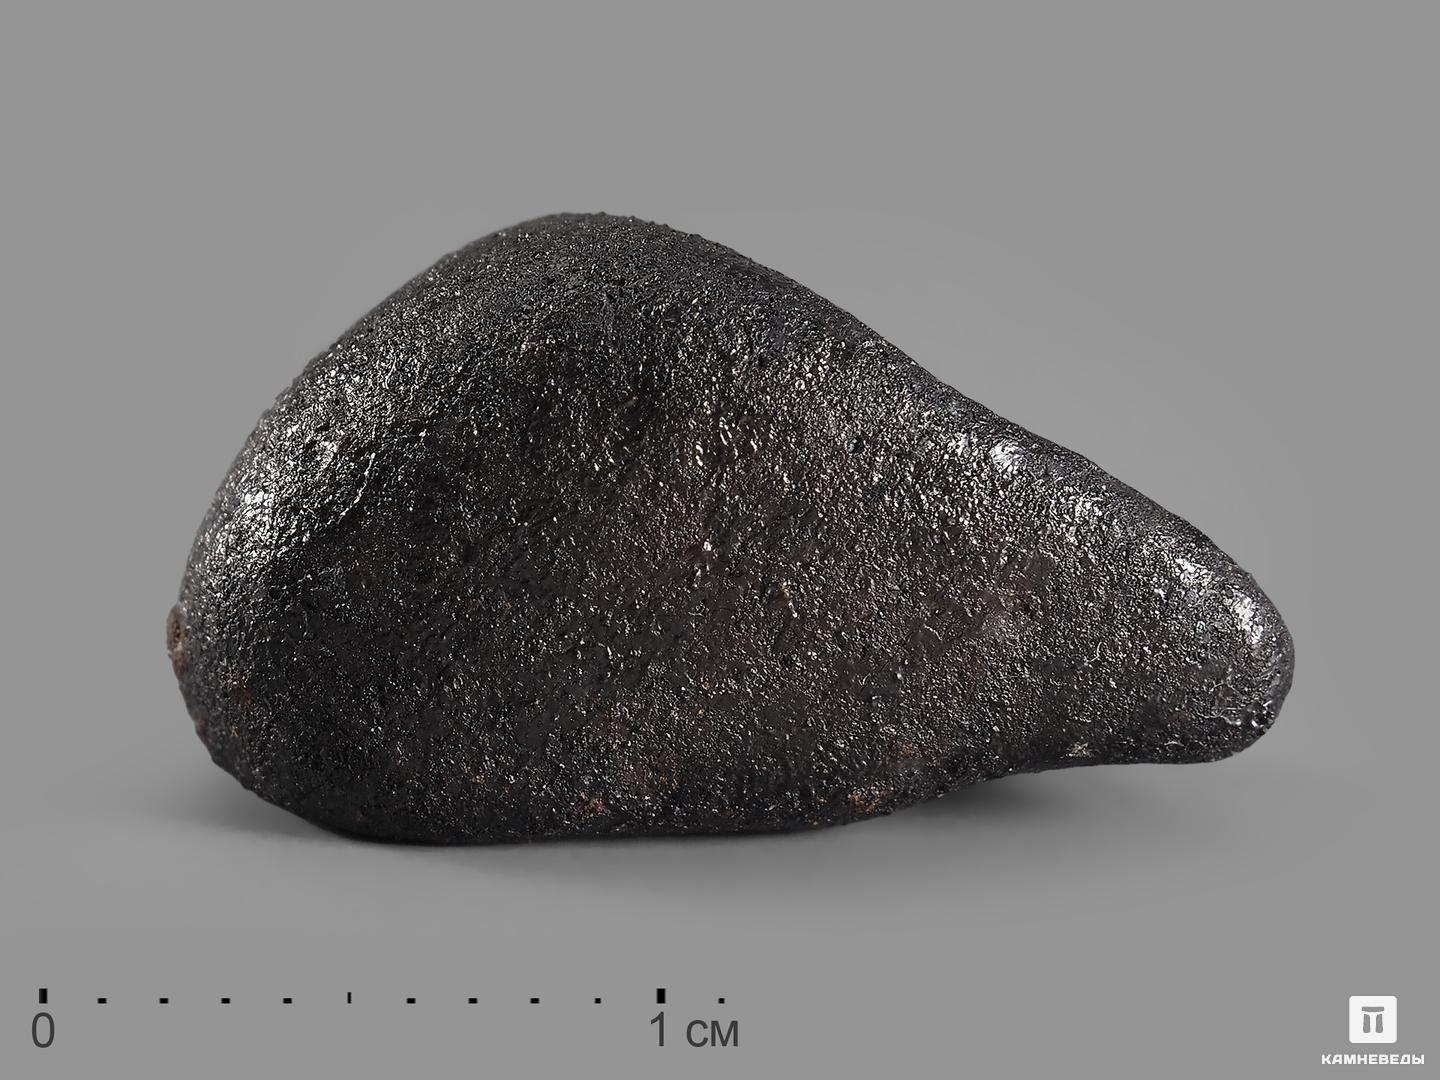 Метеорит Челябинск LL5,1-2 см (2-2,5 г)